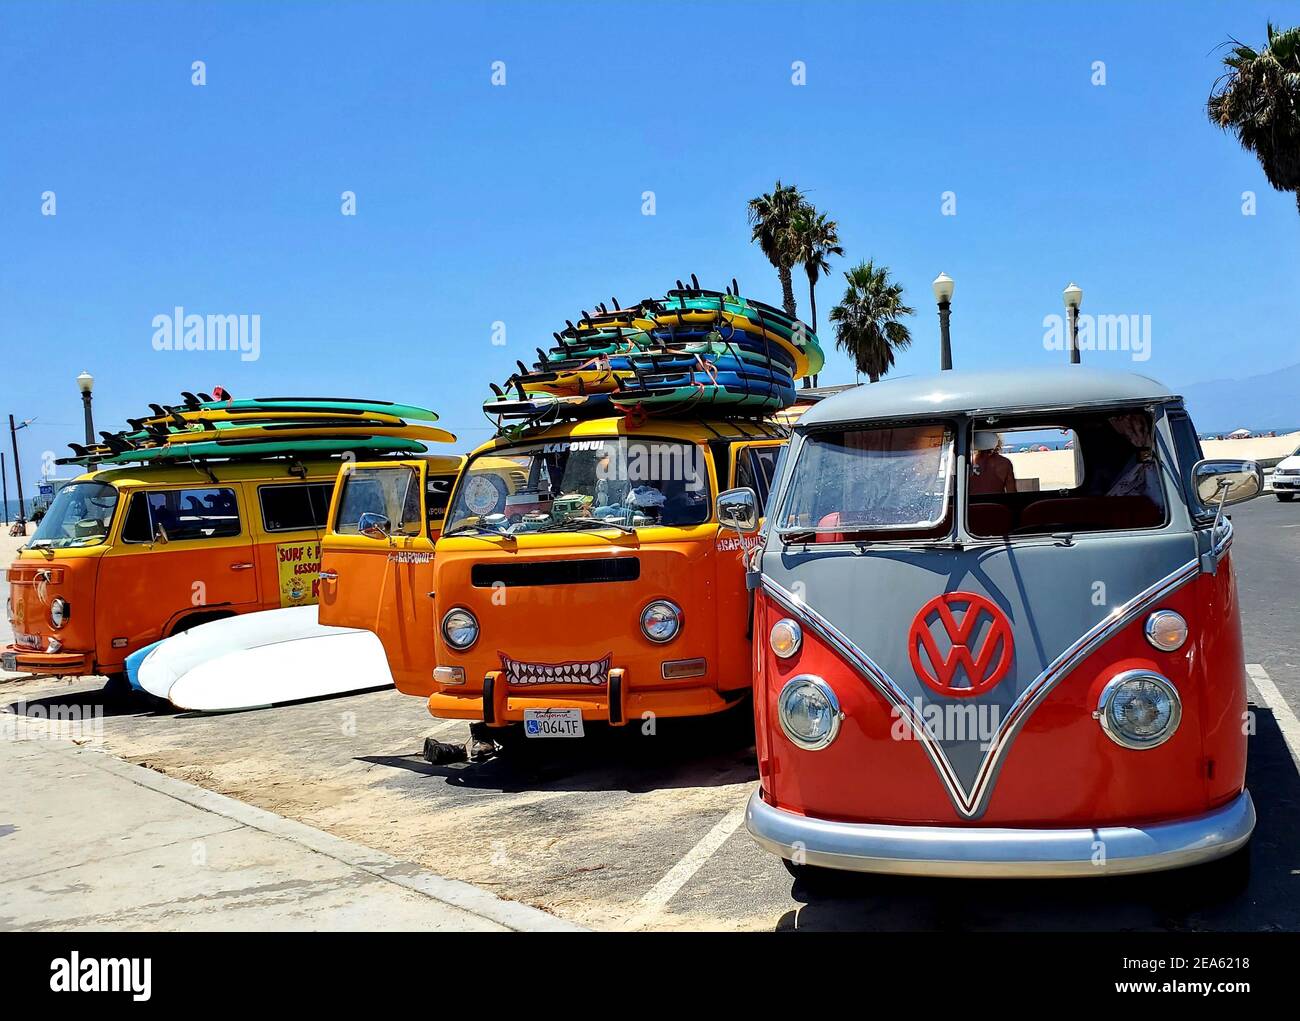 – in Vw Alamy bus beach Auflösung -Fotos hoher und surf -Bildmaterial